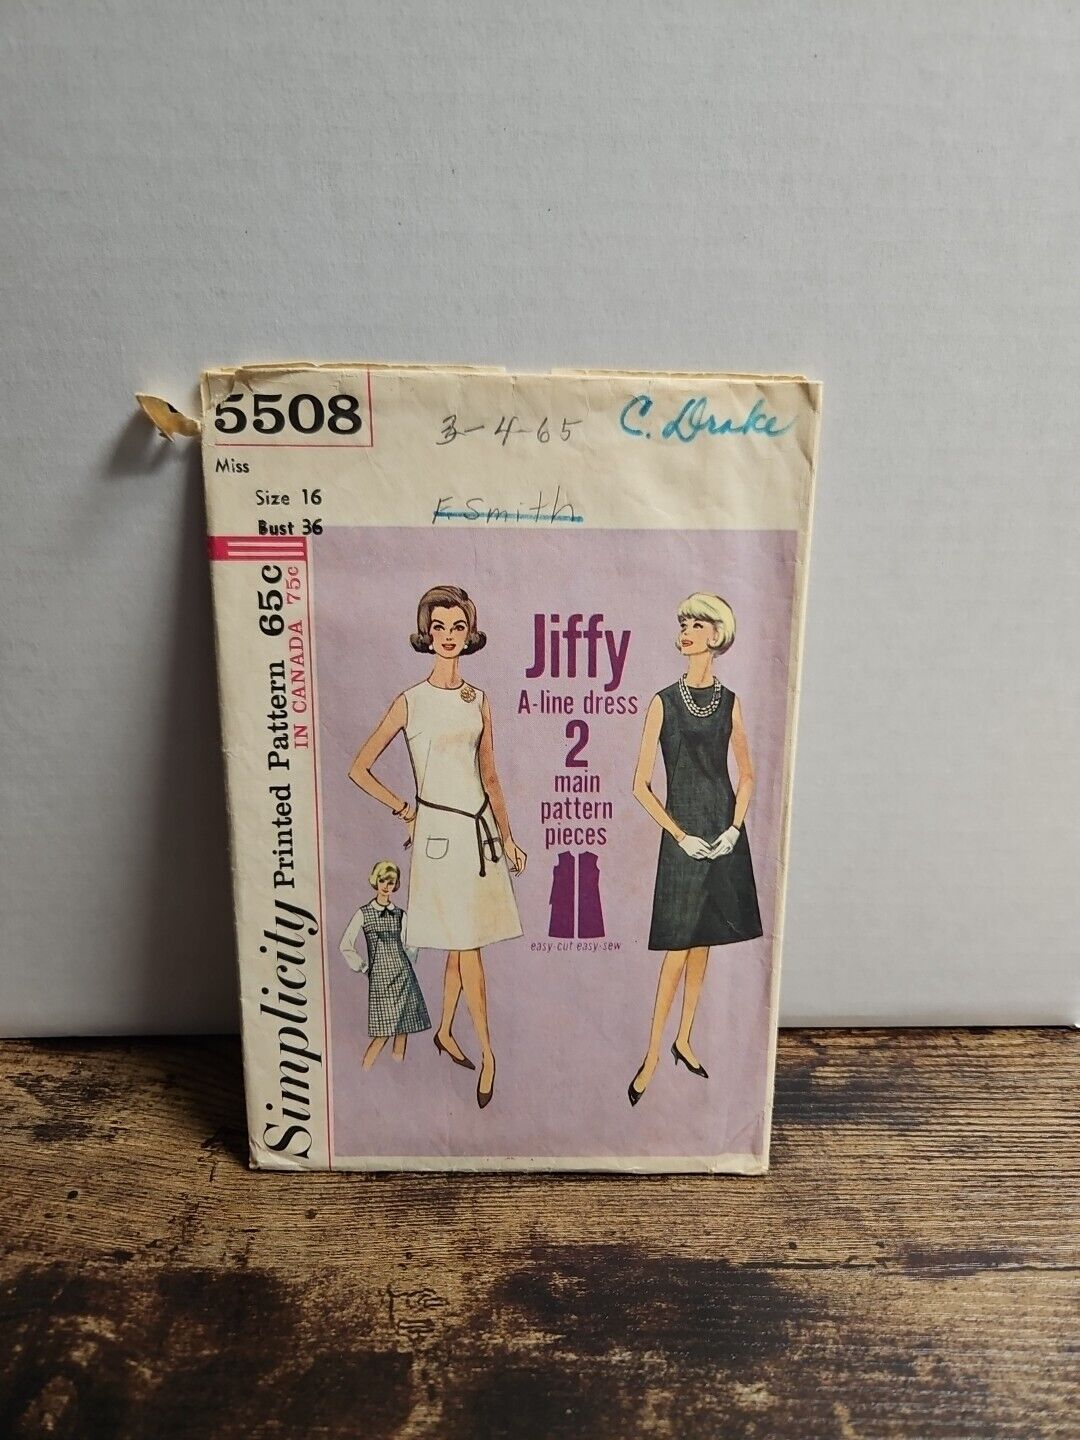 VINTAGE SIMPLICITY 1964 LADIES A-LINE DRESS PATTERN 5508 SIZE 16